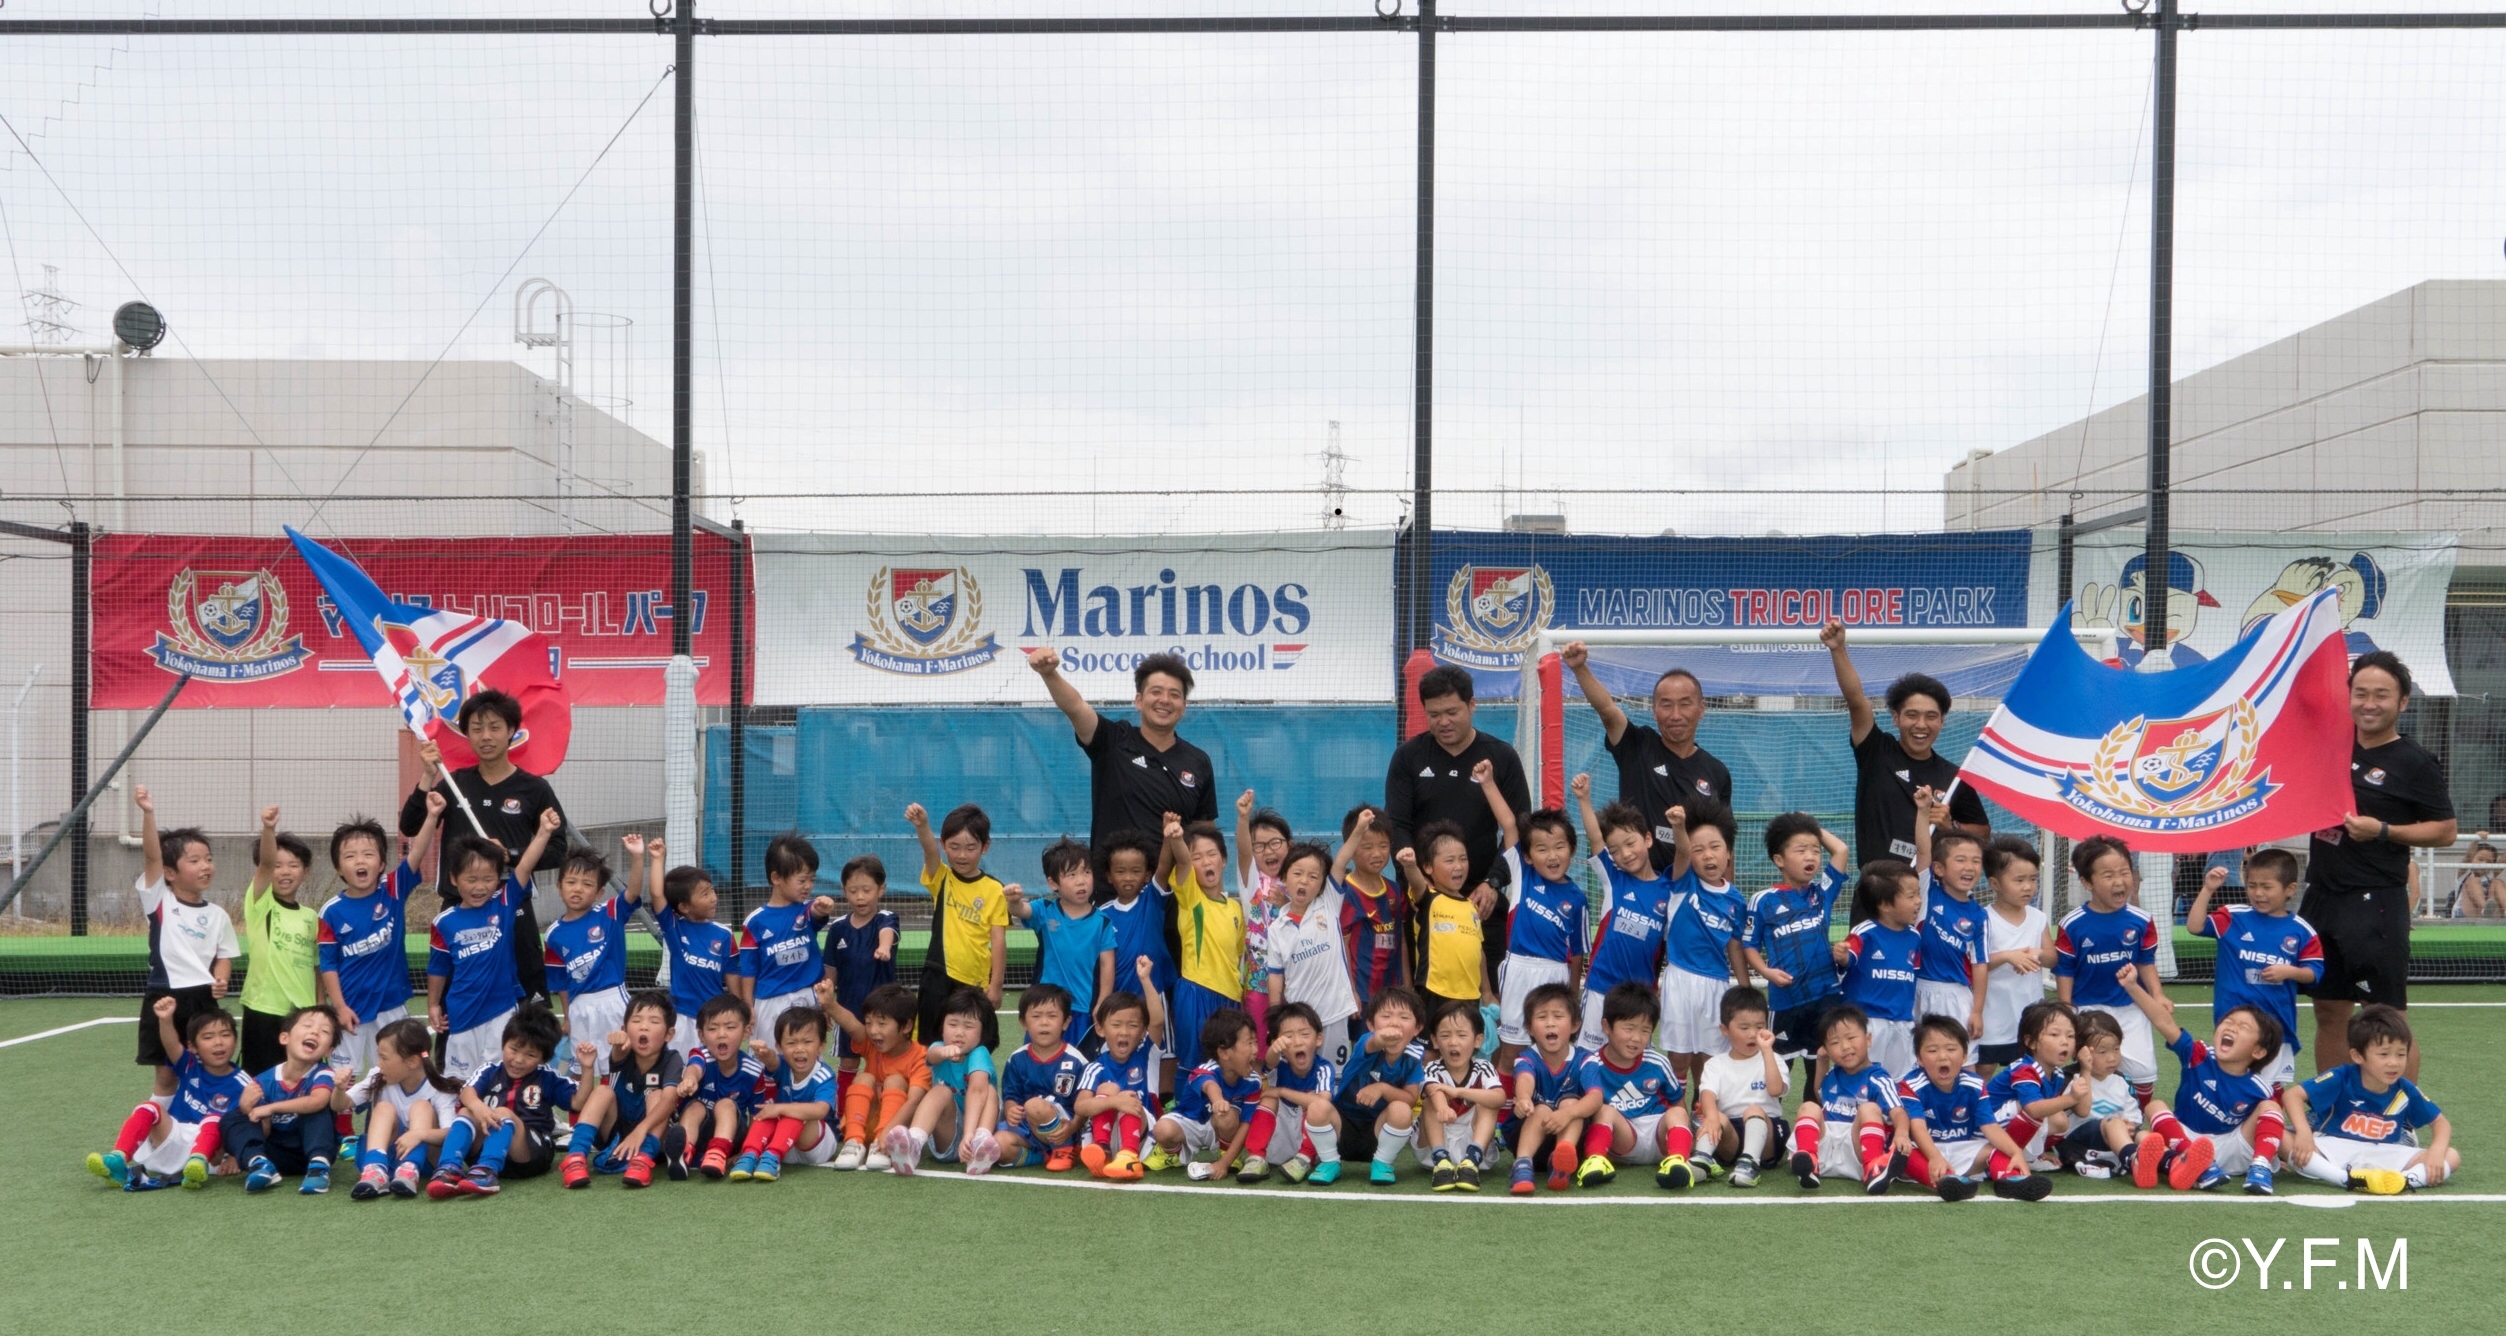 みんなplay 横浜f マリノスが 横浜f マリノス グラスルーツフェスティバル を開催 Jfa 公益財団法人日本サッカー協会